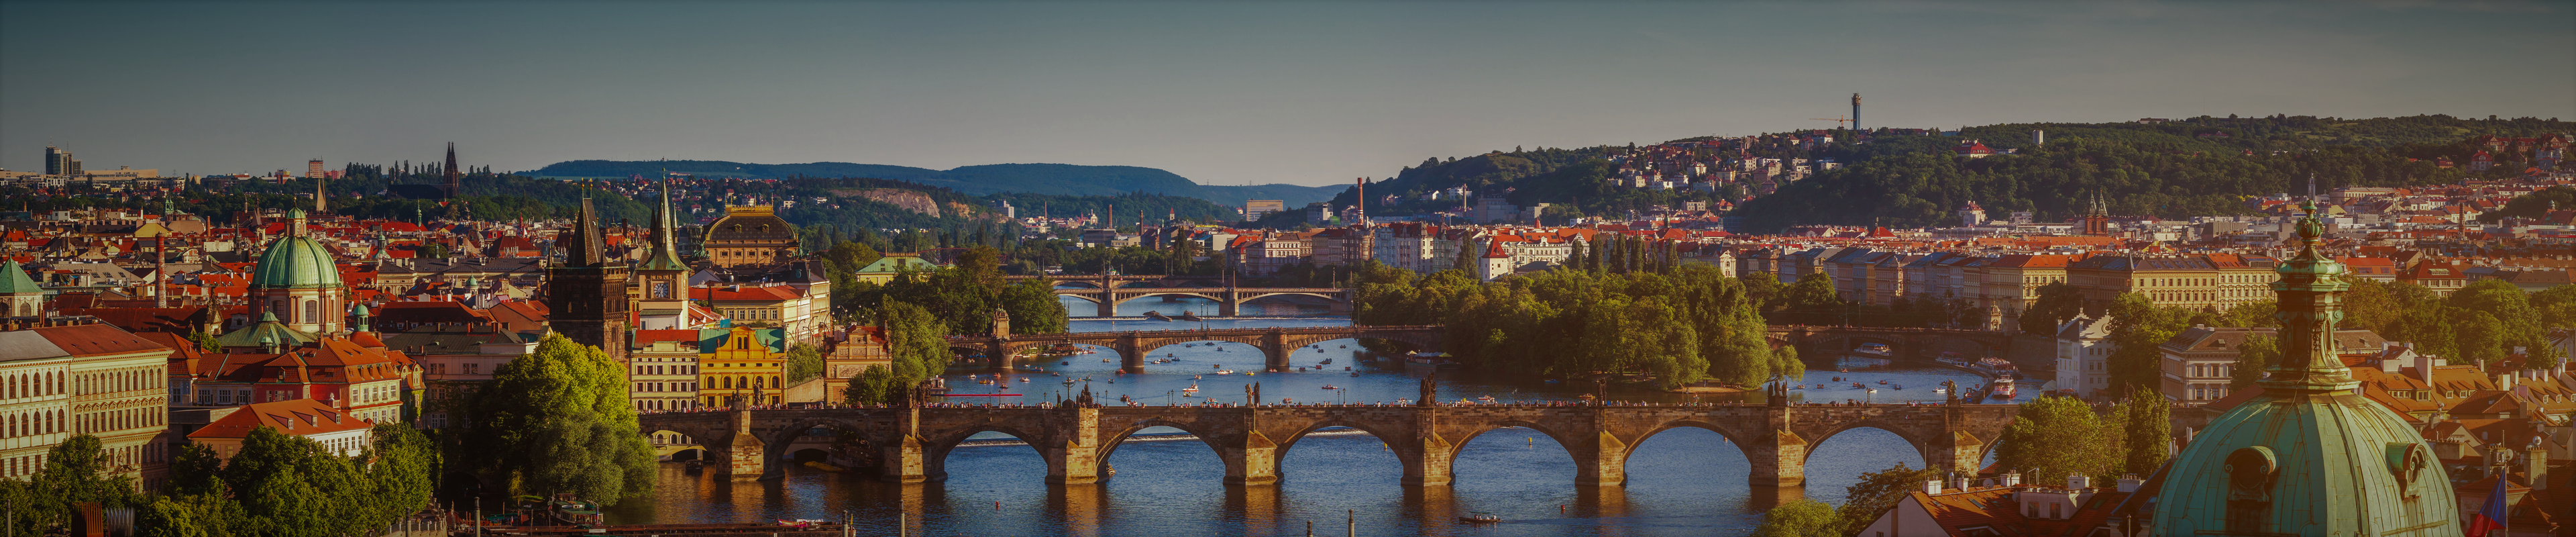 Best Digital Marketing Agencies in Prague